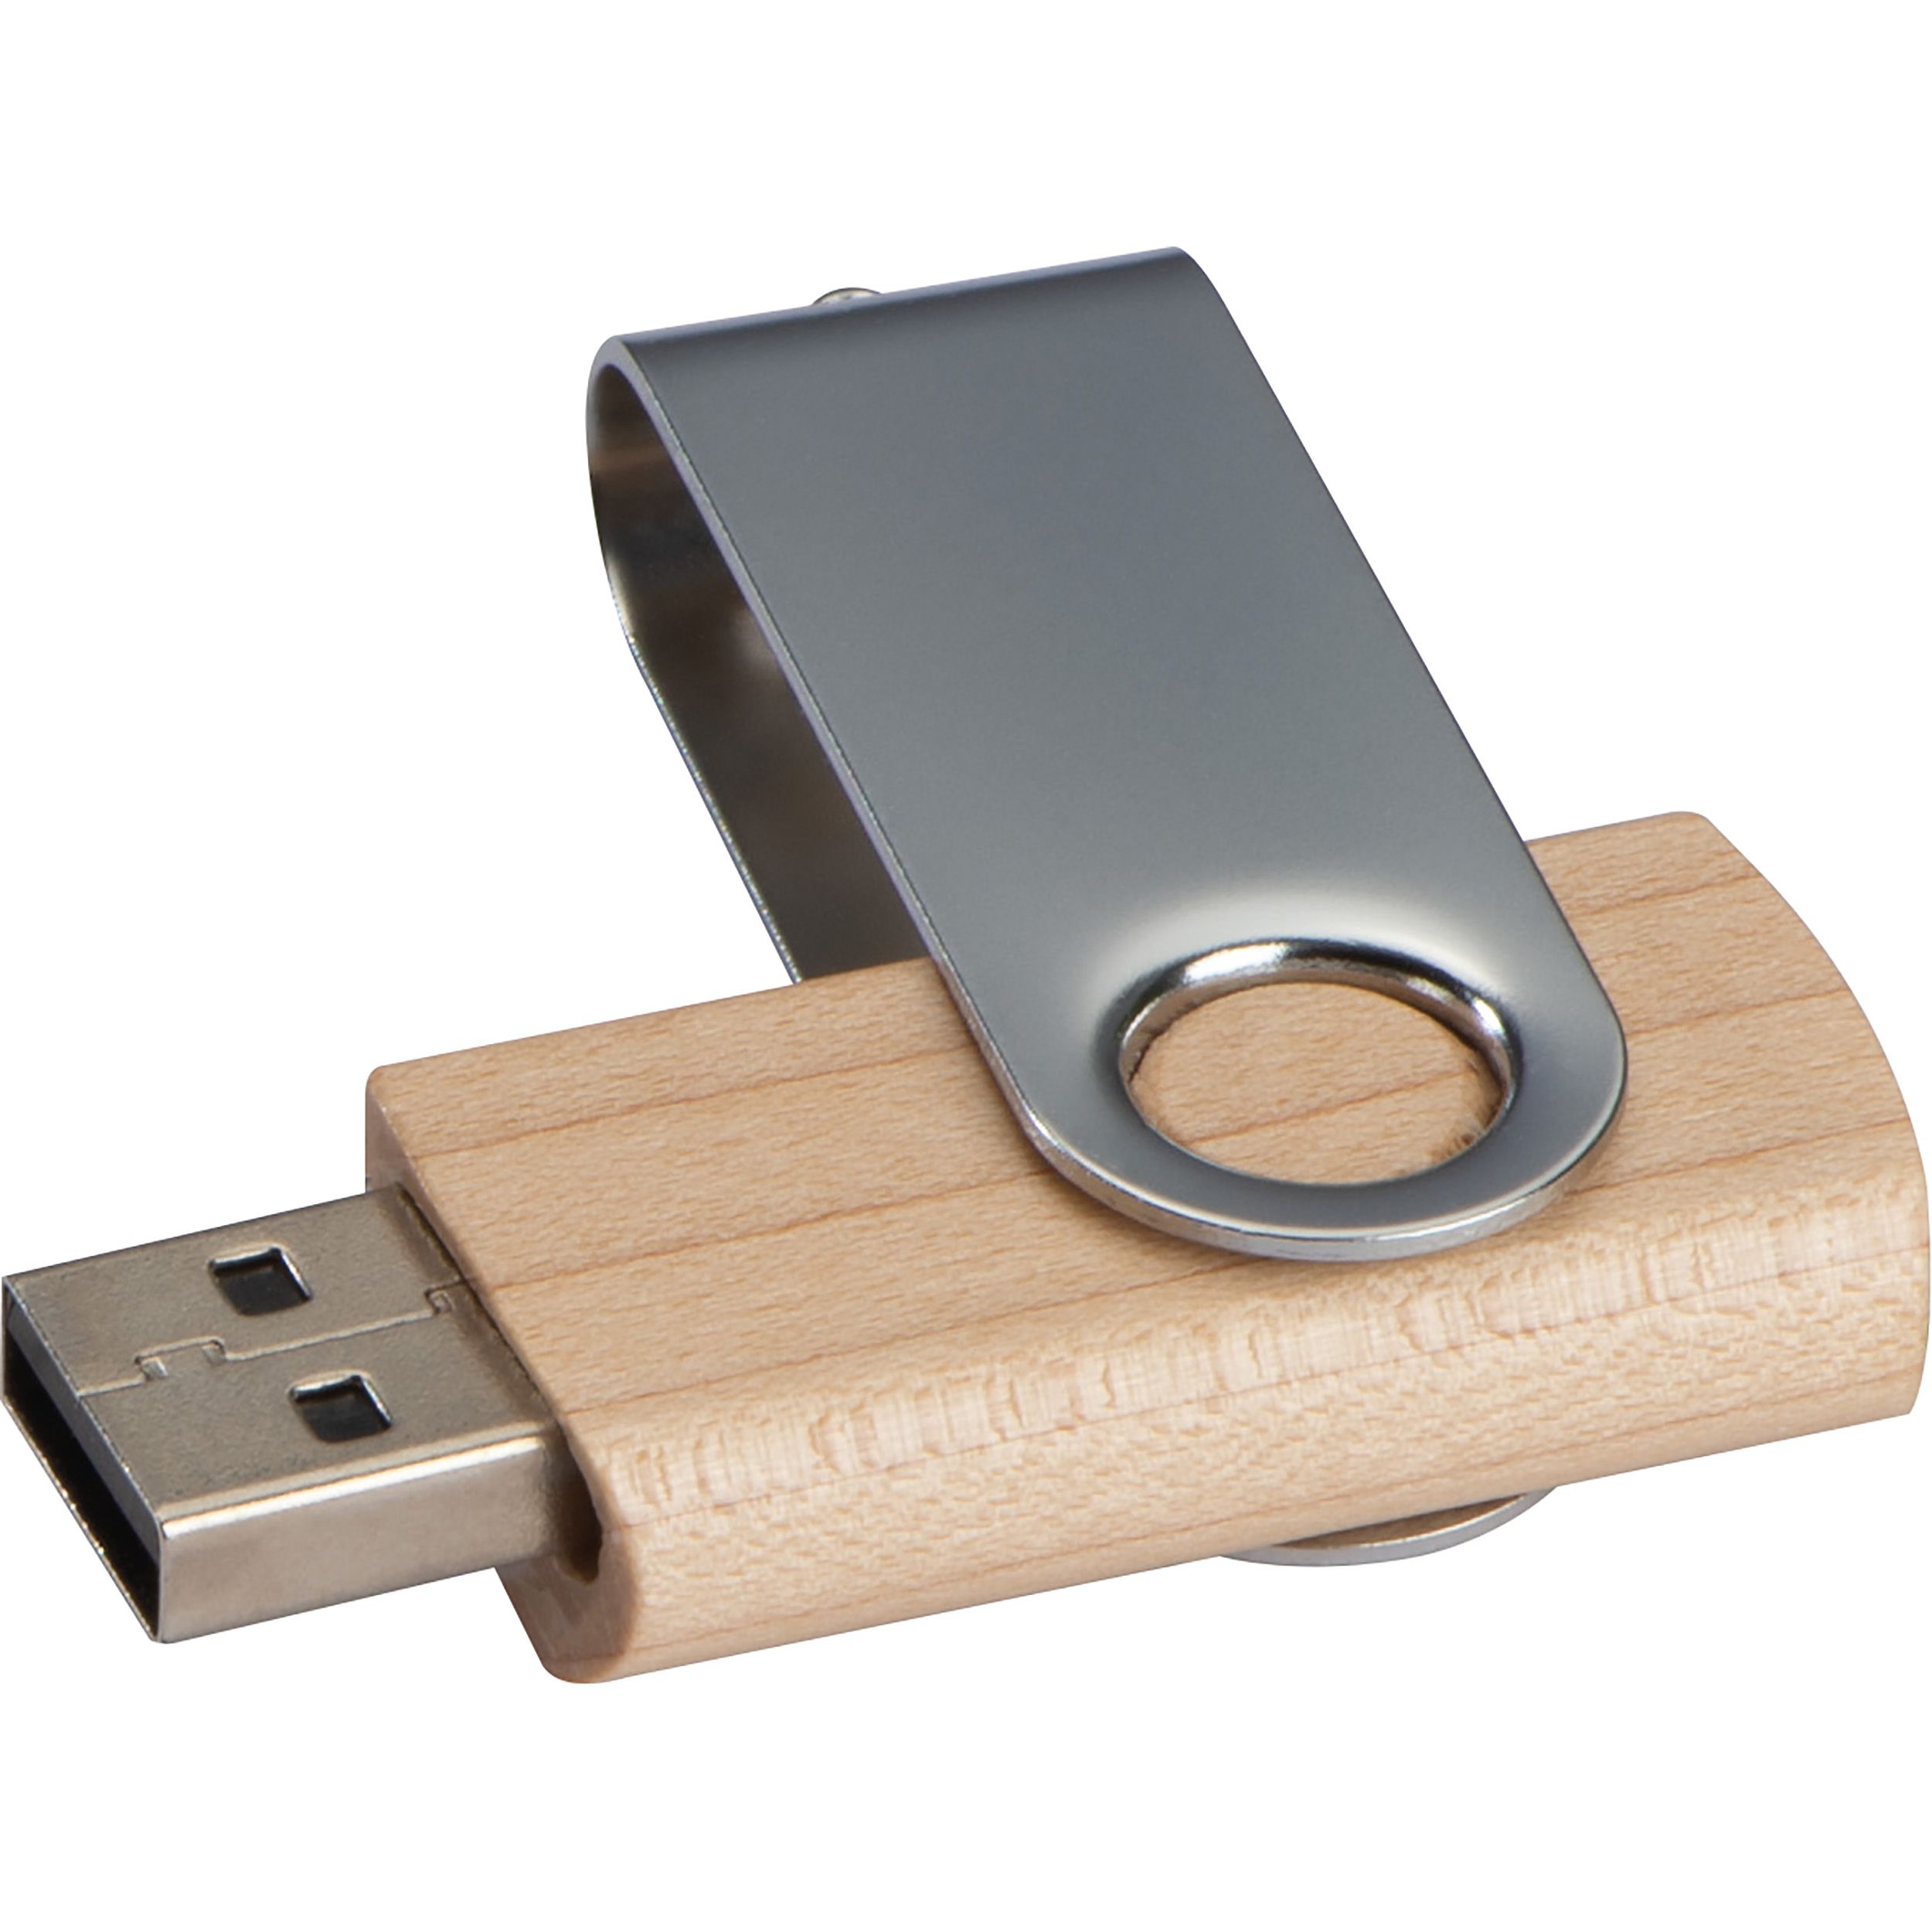 USB Stick aus hellem Holz 4GB, braun